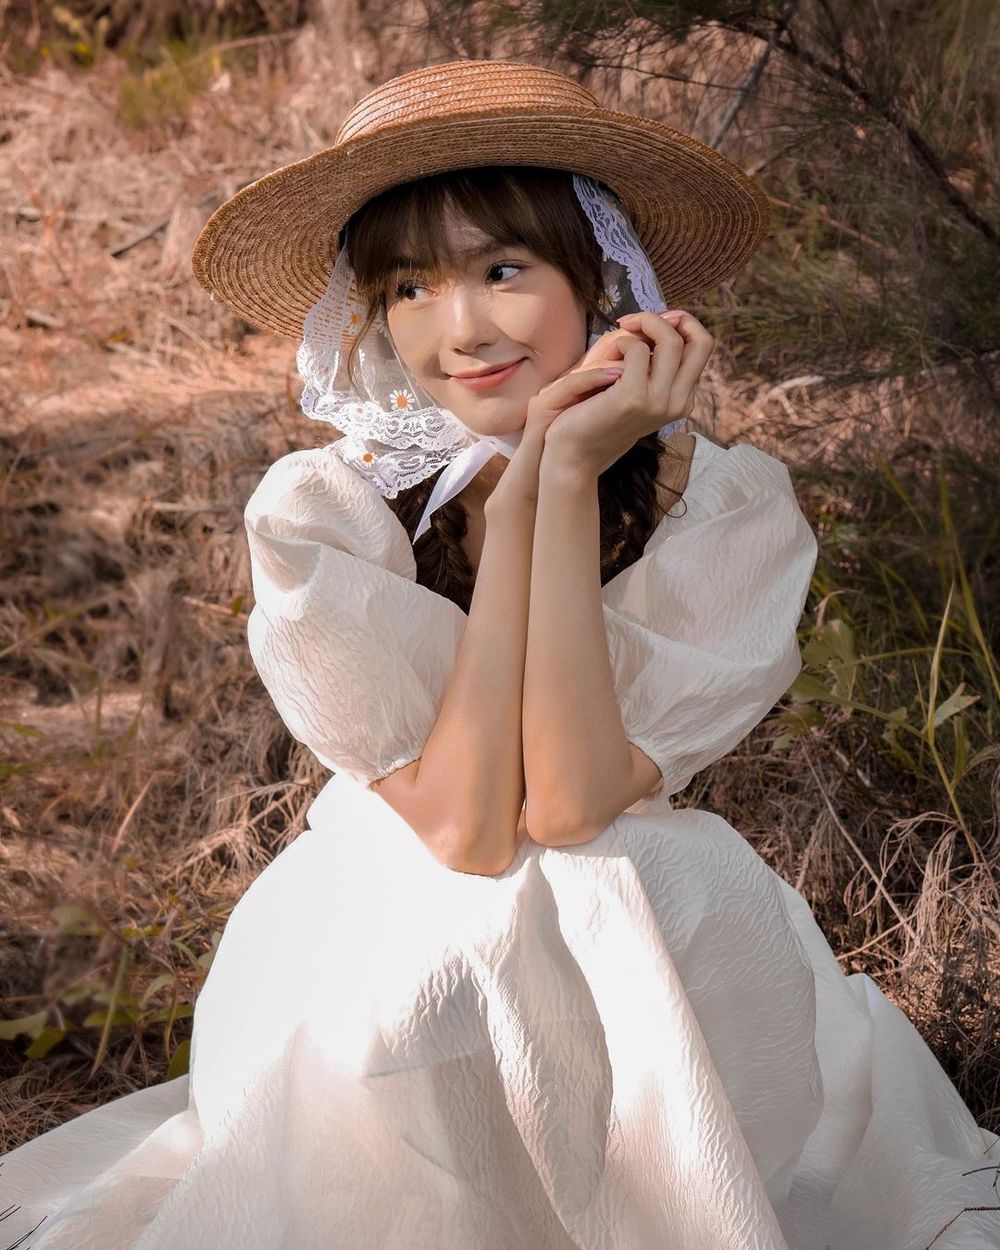  
Minh Hằng trình làng bộ ảnh mới, hóa "công chúa đồng quê" với váy trắng dài và nón cói. (Ảnh: FBNV)